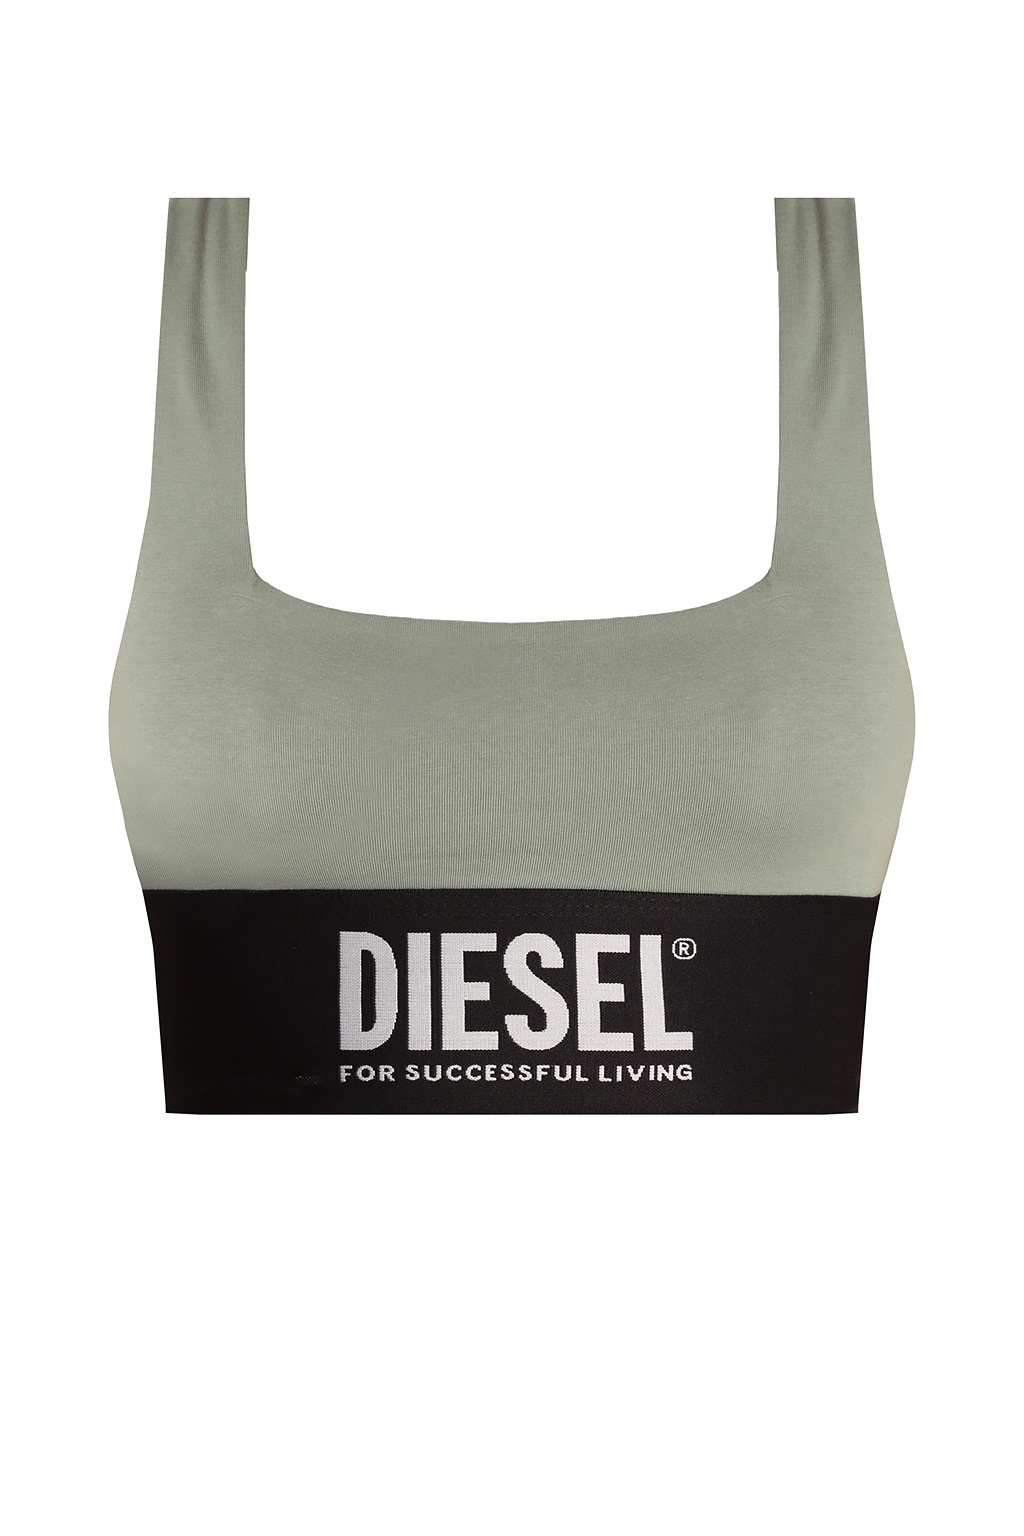 Diesel louisa logo bra co-ord set in black